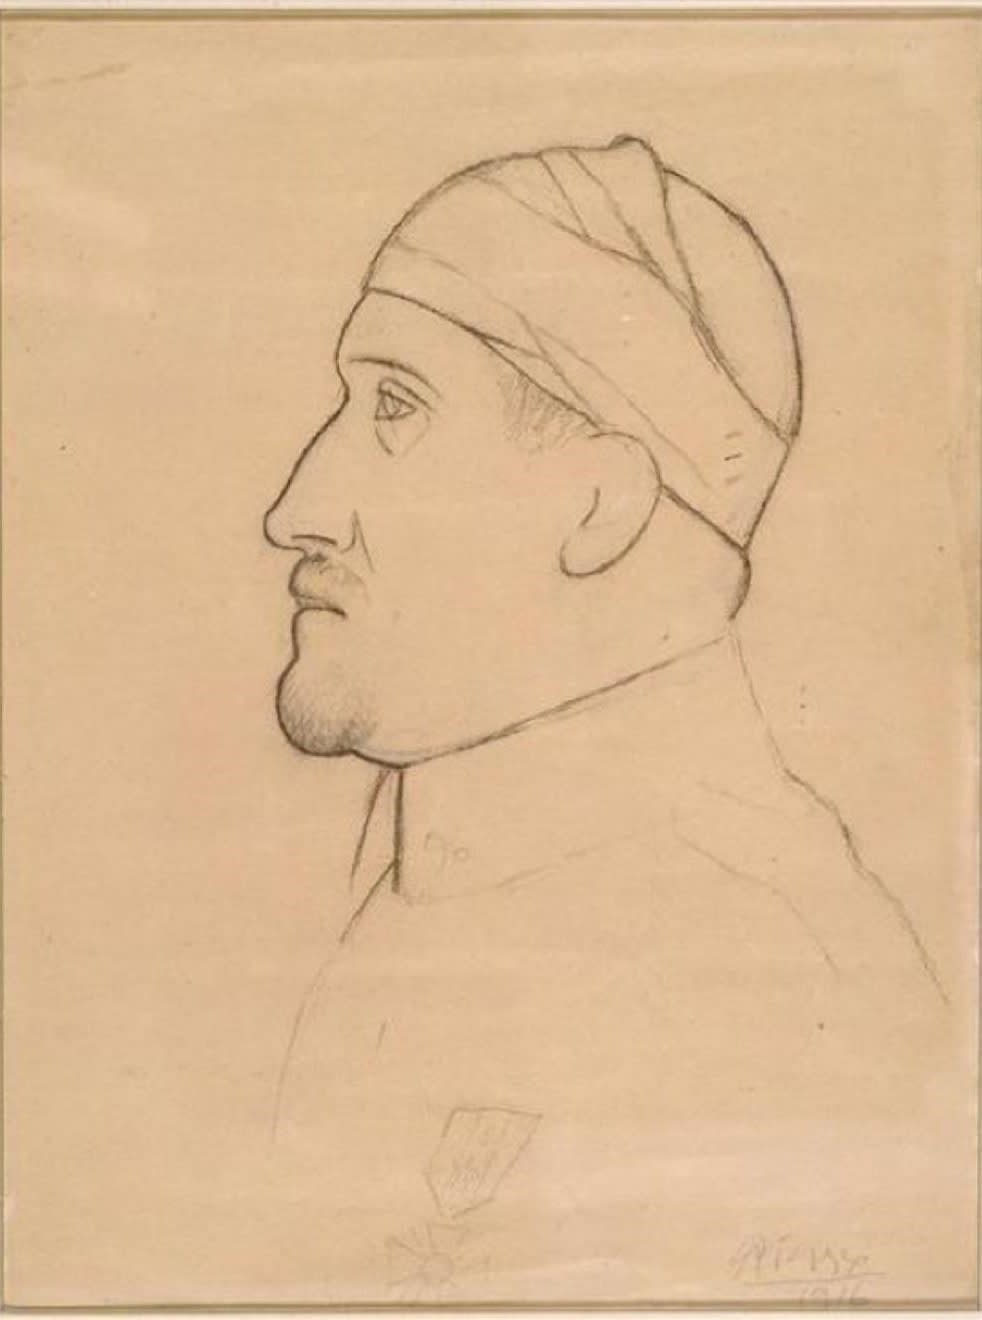 Apollinaire blessé, 1916, graphite pencil and conté crayon on paper, 31.3 x 23.1 cm